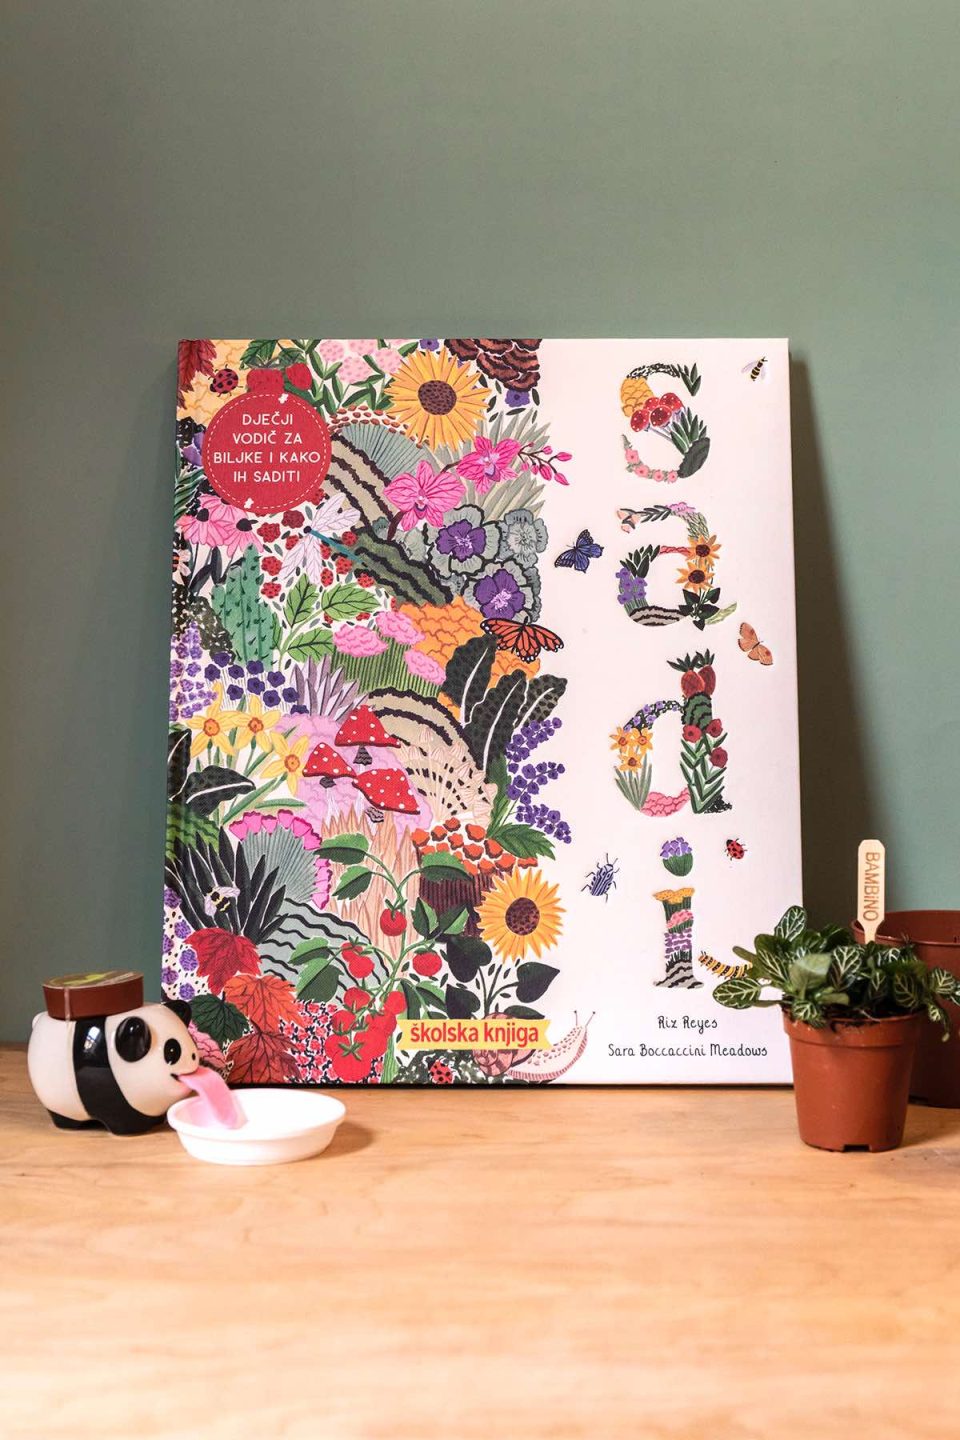 Na slici se vidi knjiga "Sadi". Naslovnica je bogato izilustrirana raznim biljkama i cvijećem. Knjiga stoji na drvenom stolu, naslonjena je na sivu pozadinu. Uz knjigu s desne strane je teglica sa sobnom biljkom, a se lijeve strane se vidi peropon u obliku pande.